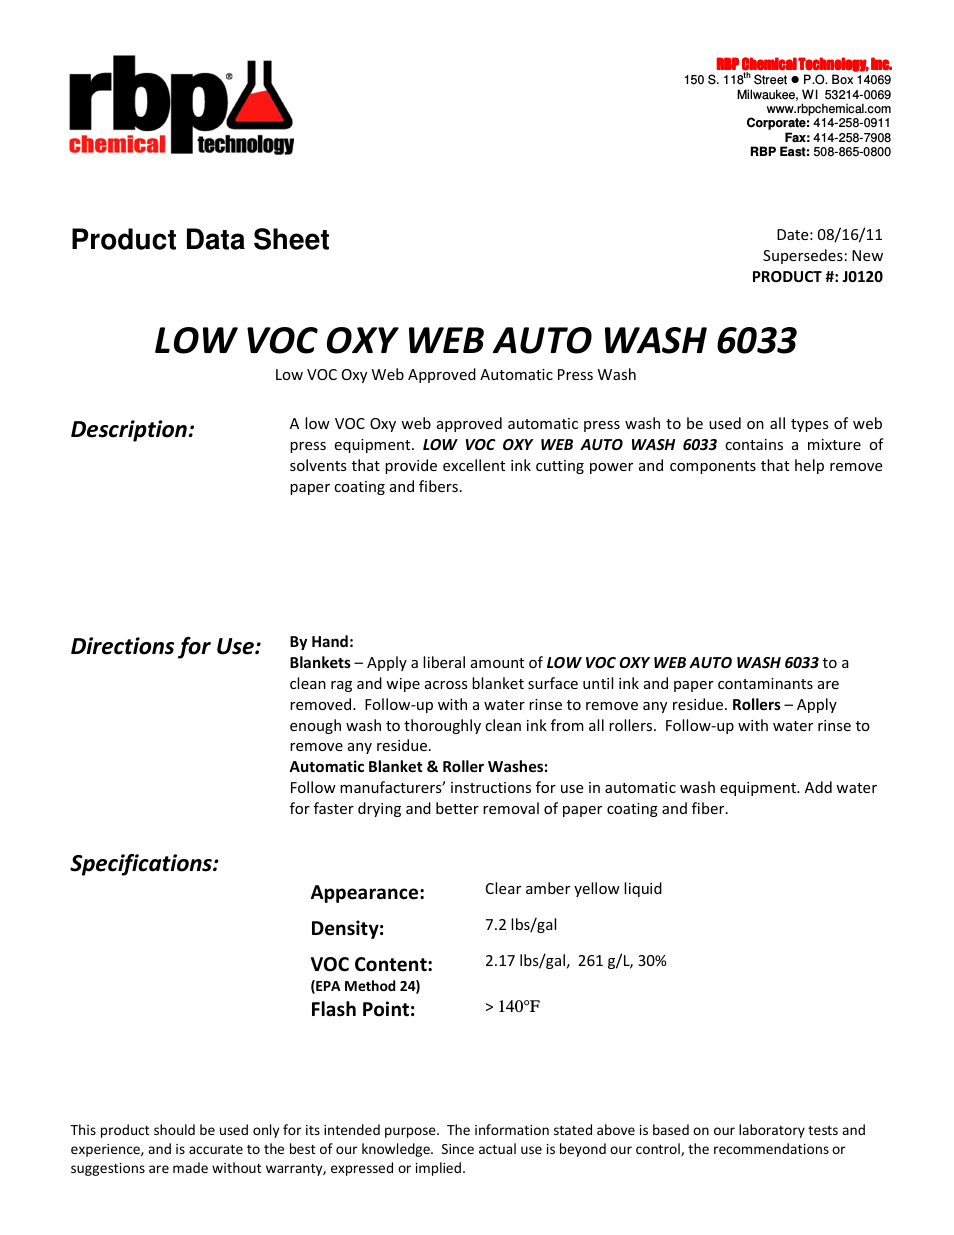 J0120 LOW VOC OXY WEB AUTO WASH 6033